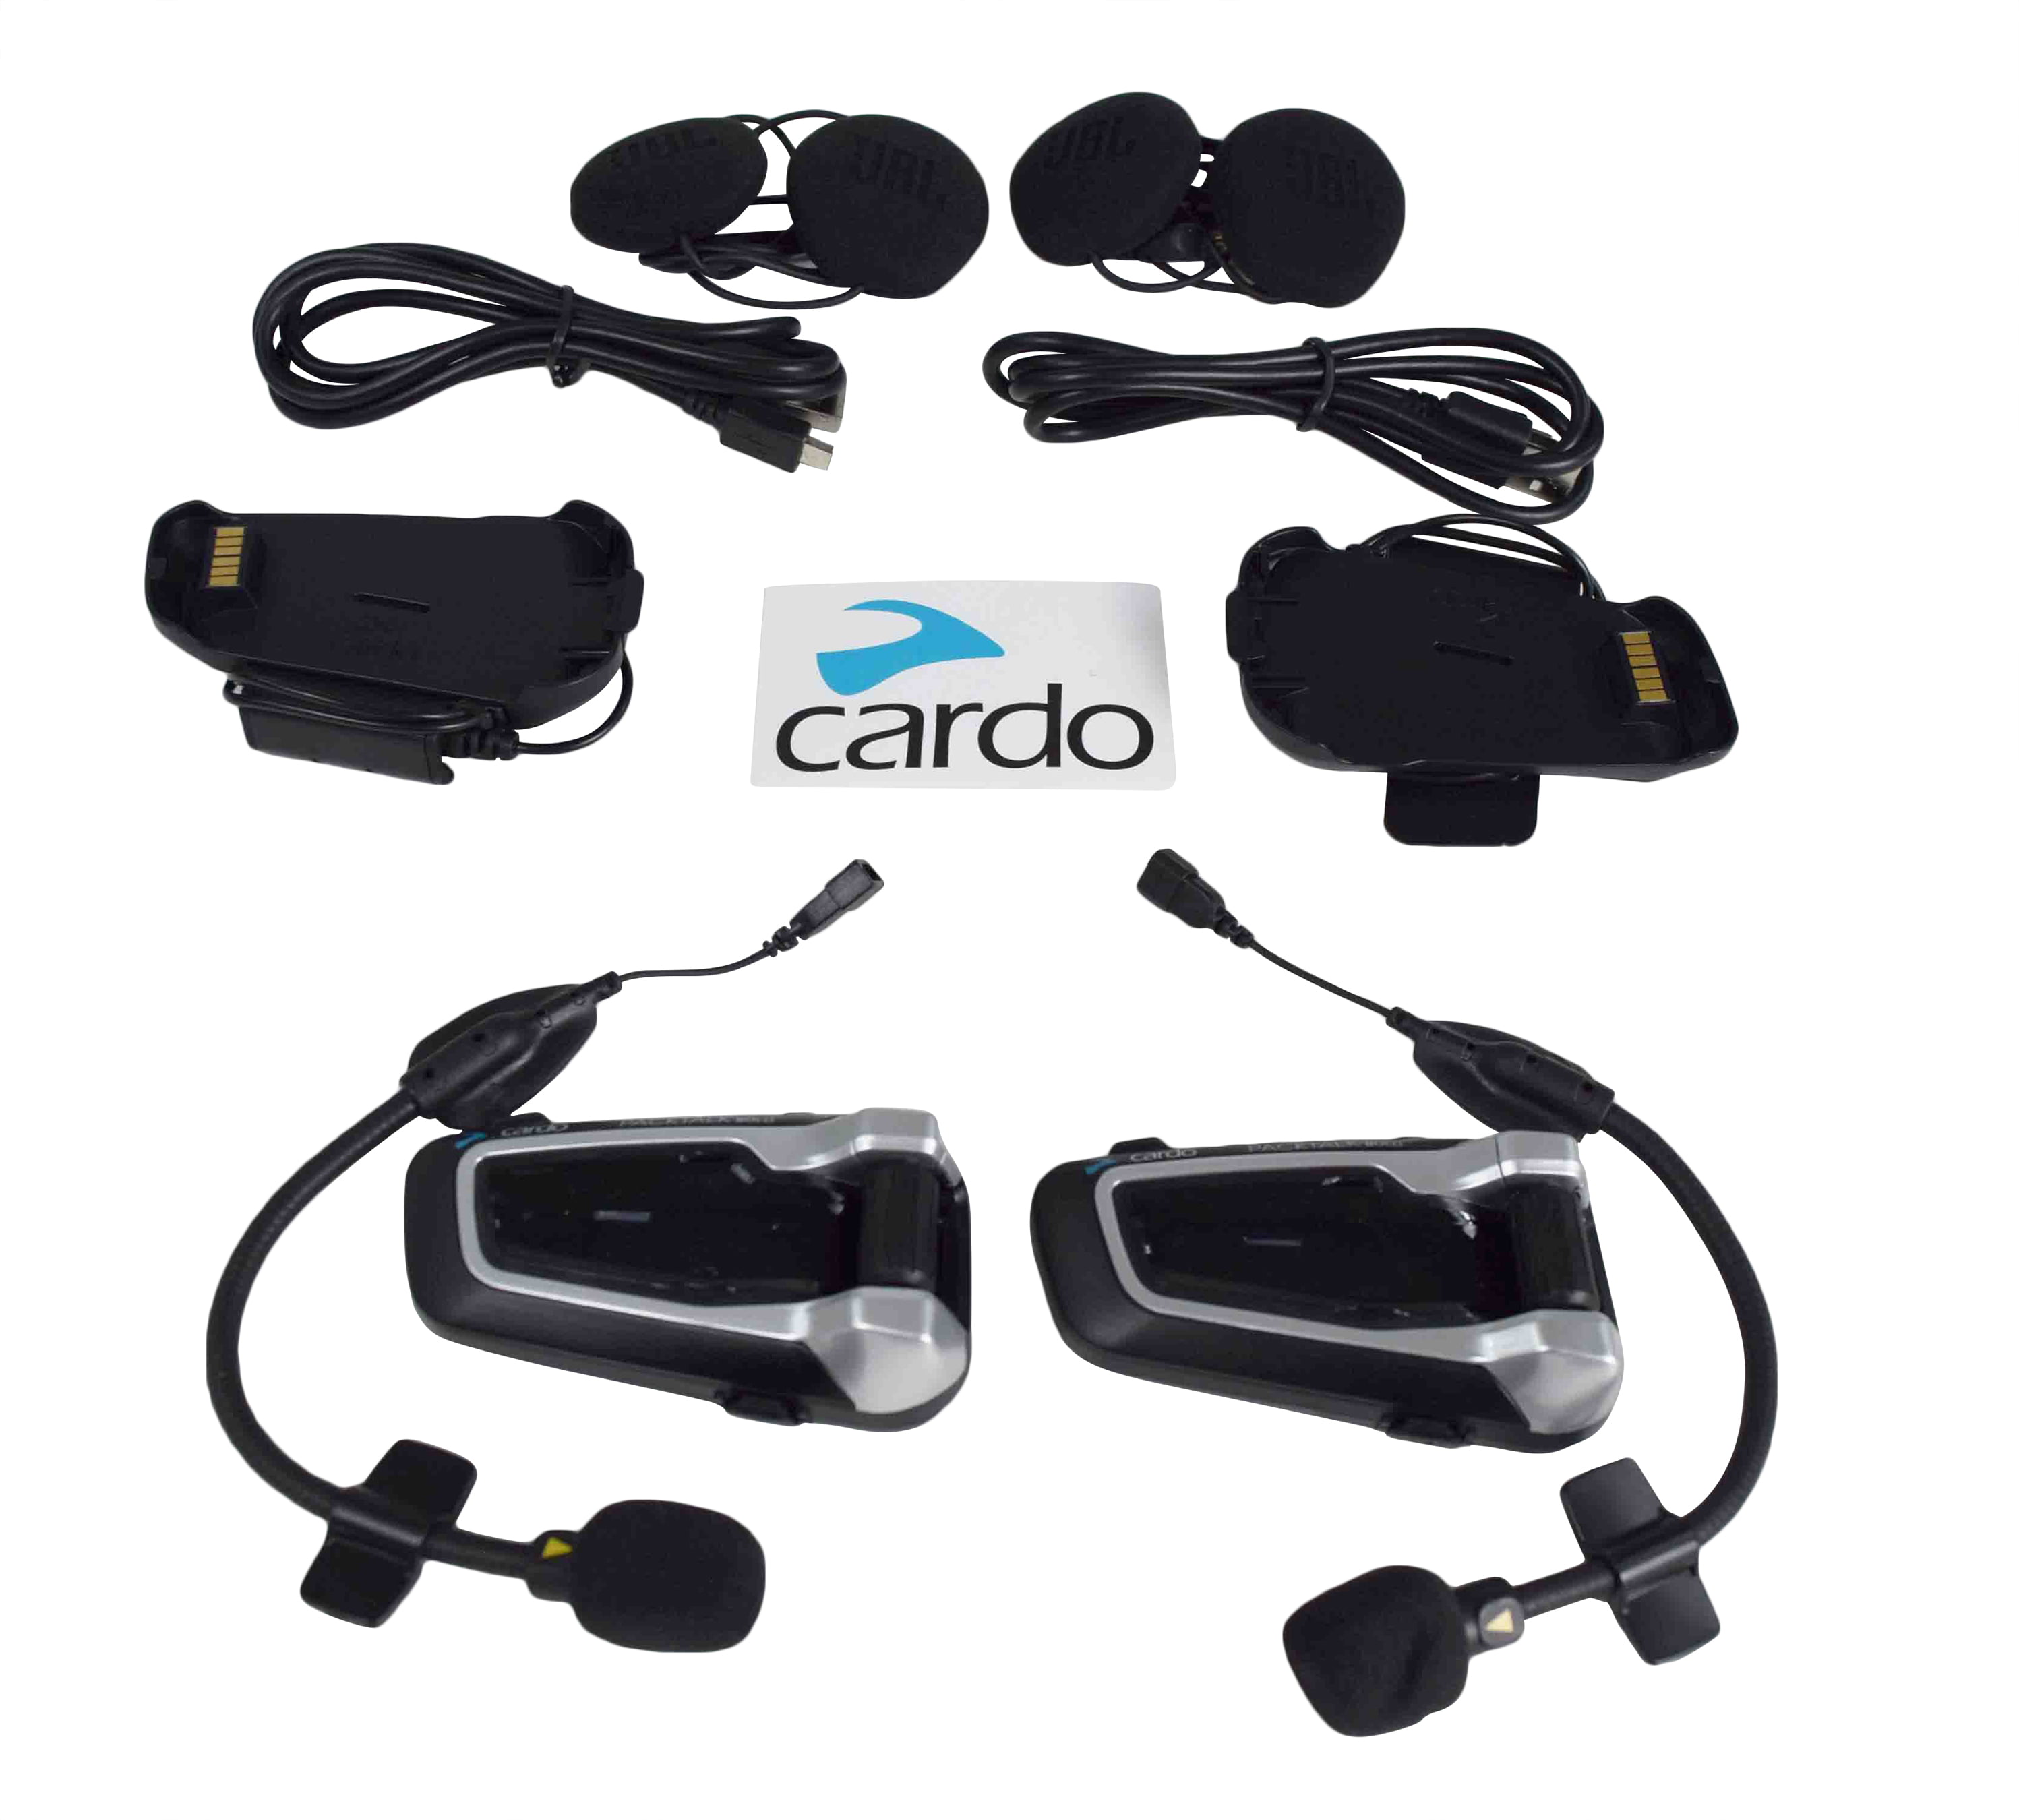 Packtalk Slim JBL Cardo Packtalk Slim Bluetooth Motorcycle Helmet Communication Headset JBL Audio with Cardo Decal Sticker